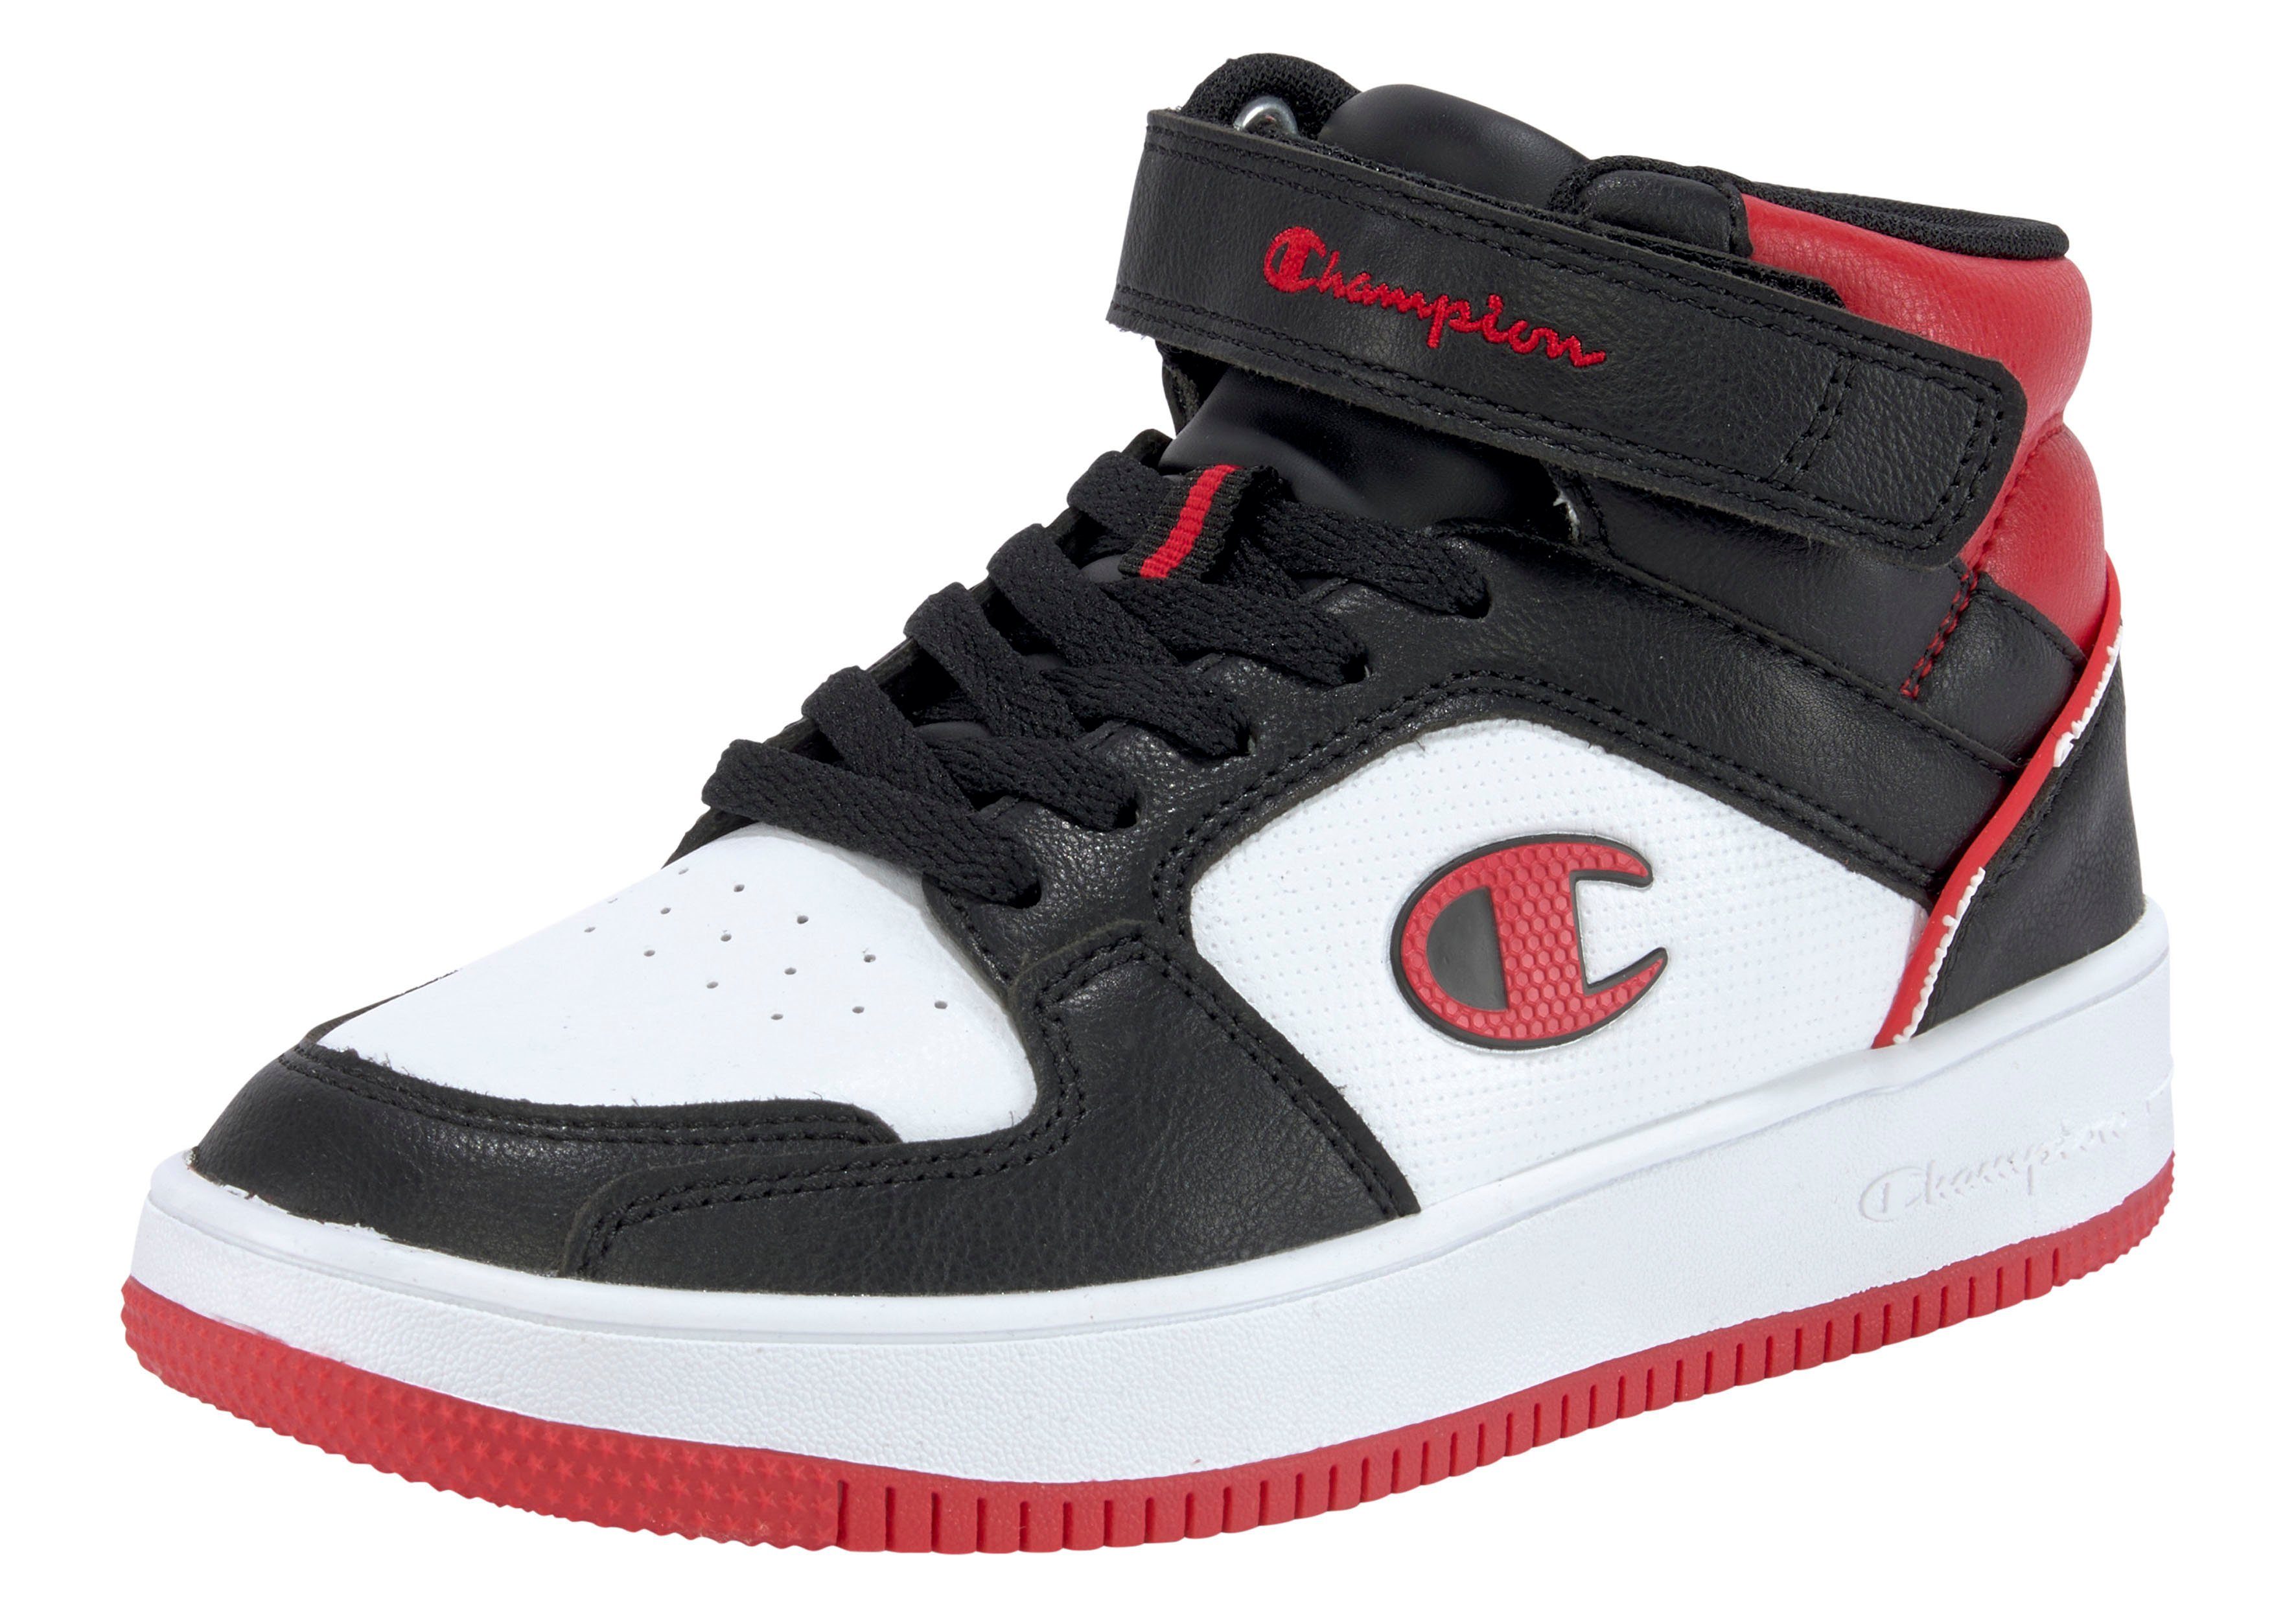 Preisangebot B GS Sneaker 2.0 schwarz-rot Champion MID REBOUND